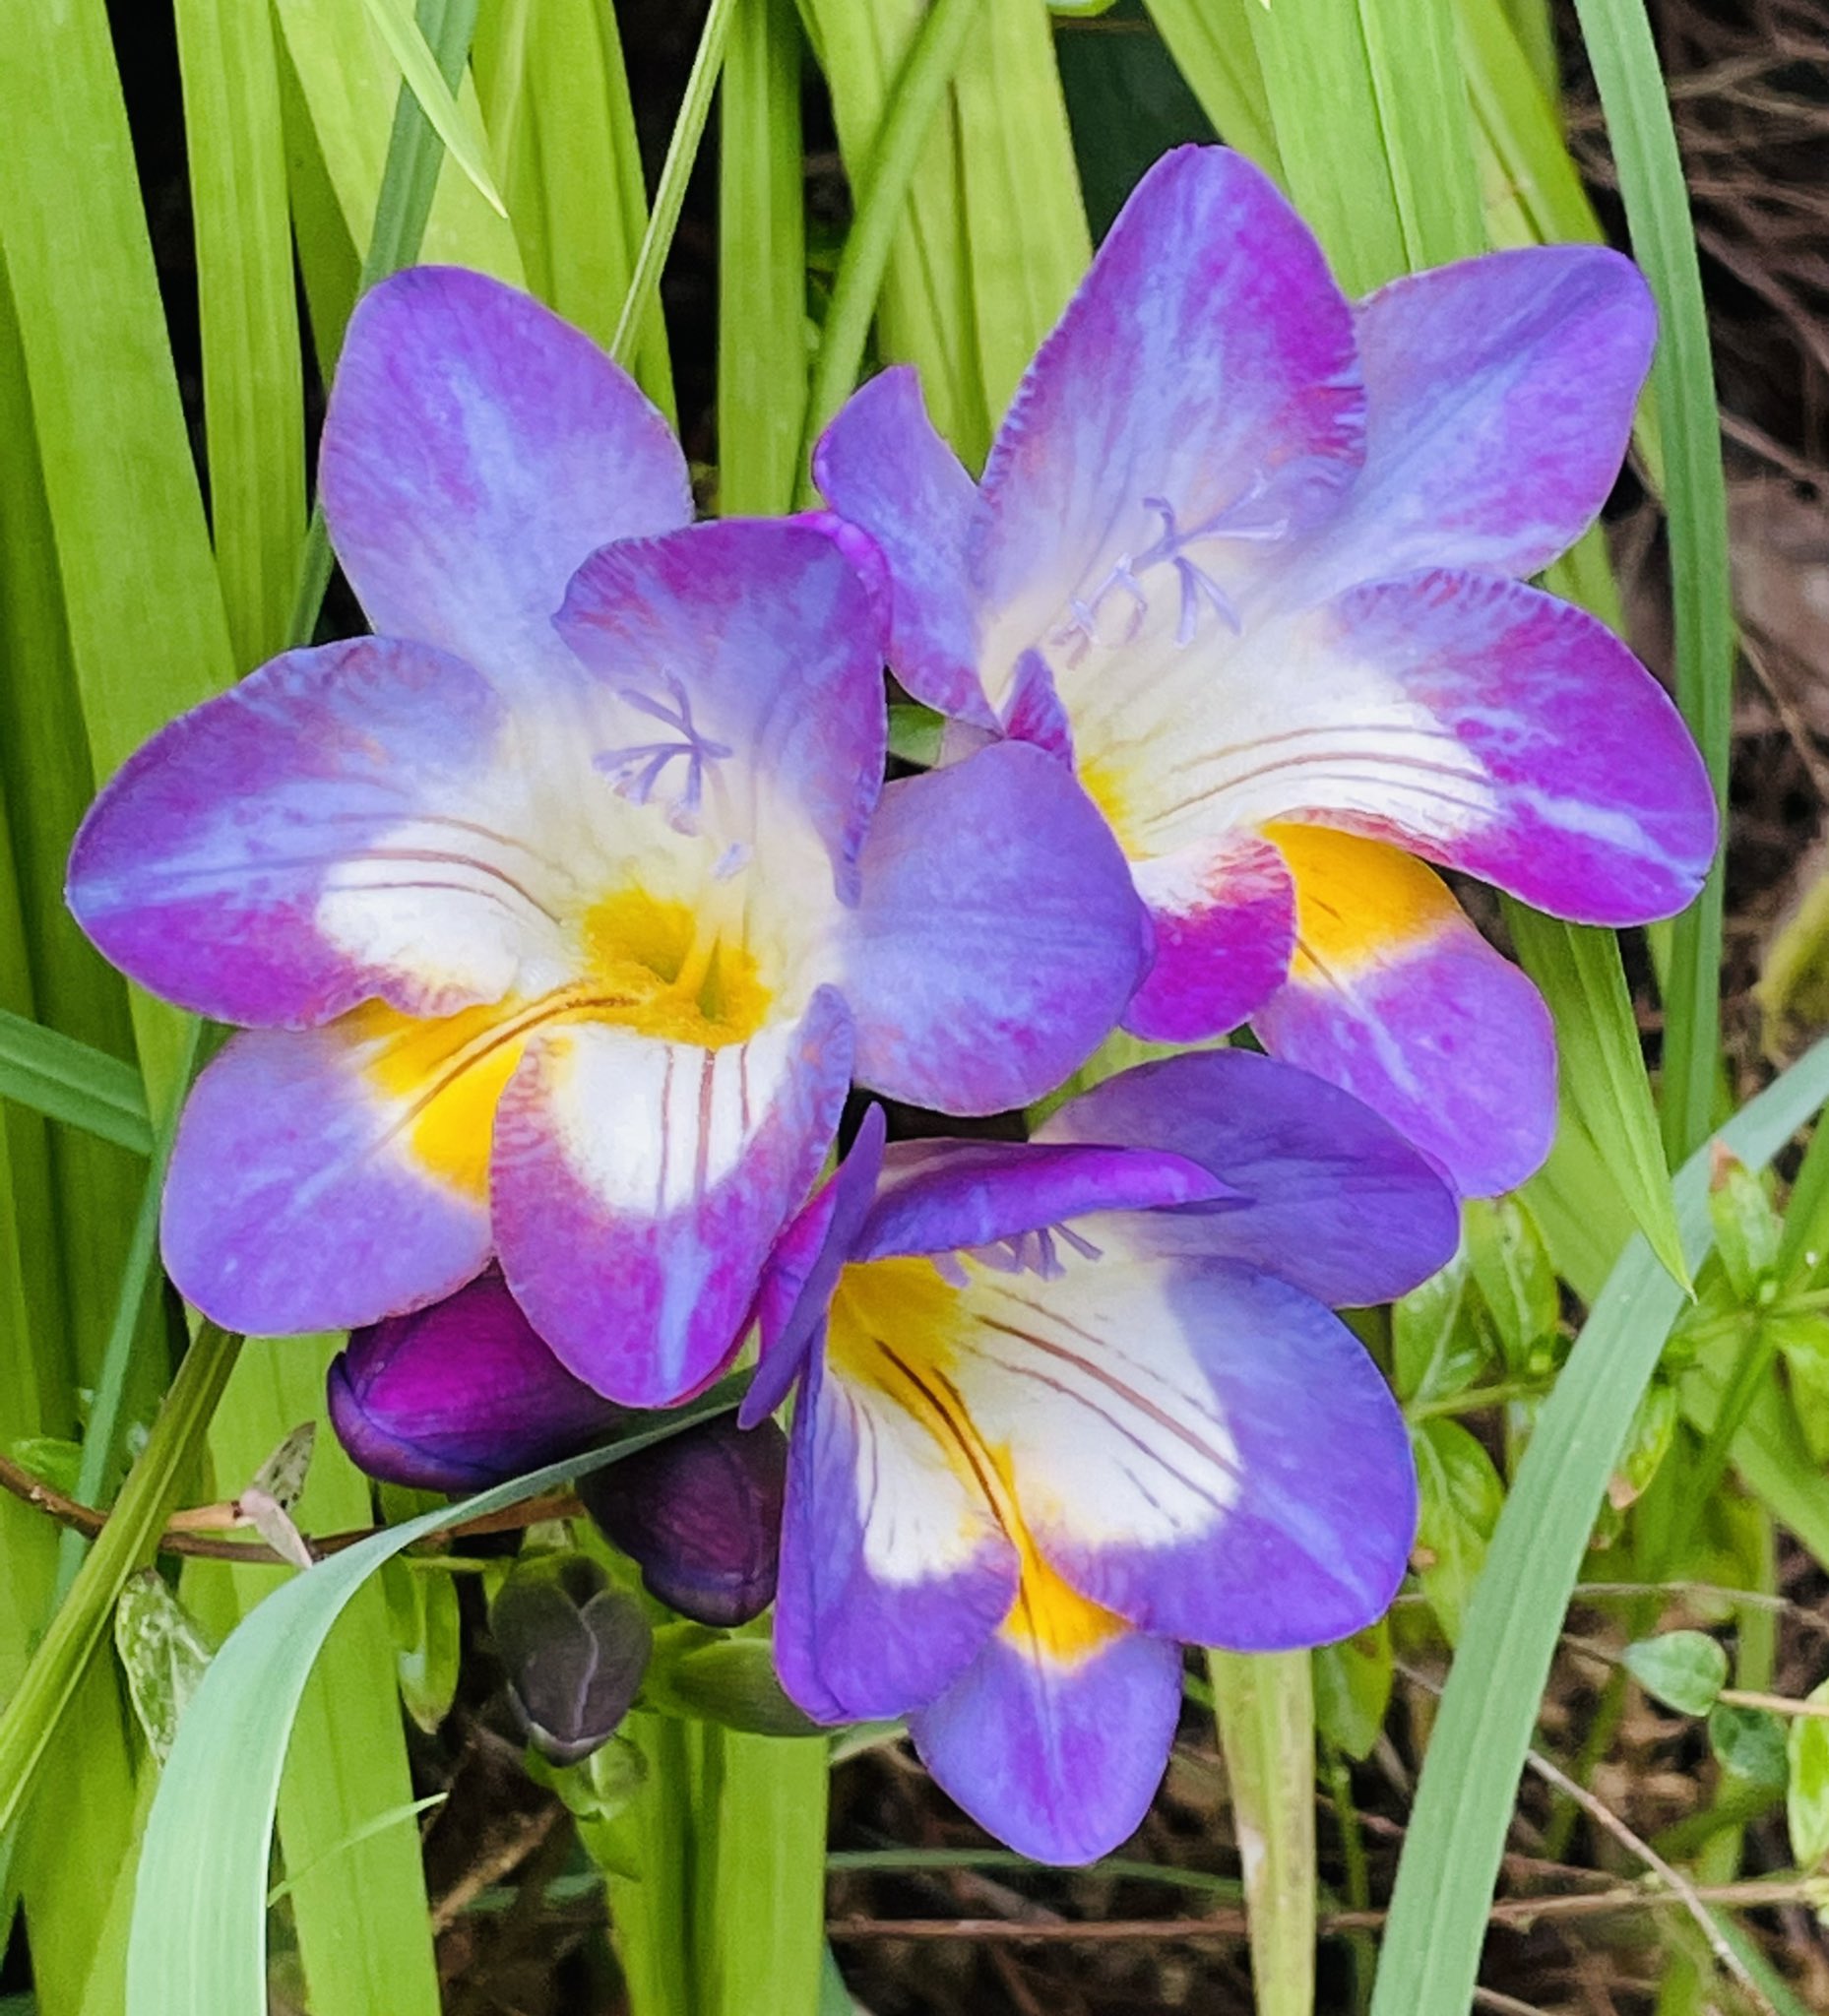 Brass Suki117 4 4 紫のフリージア3つ目 赤のフリージア花開き つつあります 黄色が1番多く咲き そうですがまだ蕾です 家の花 T Co H3azkfhwru Twitter